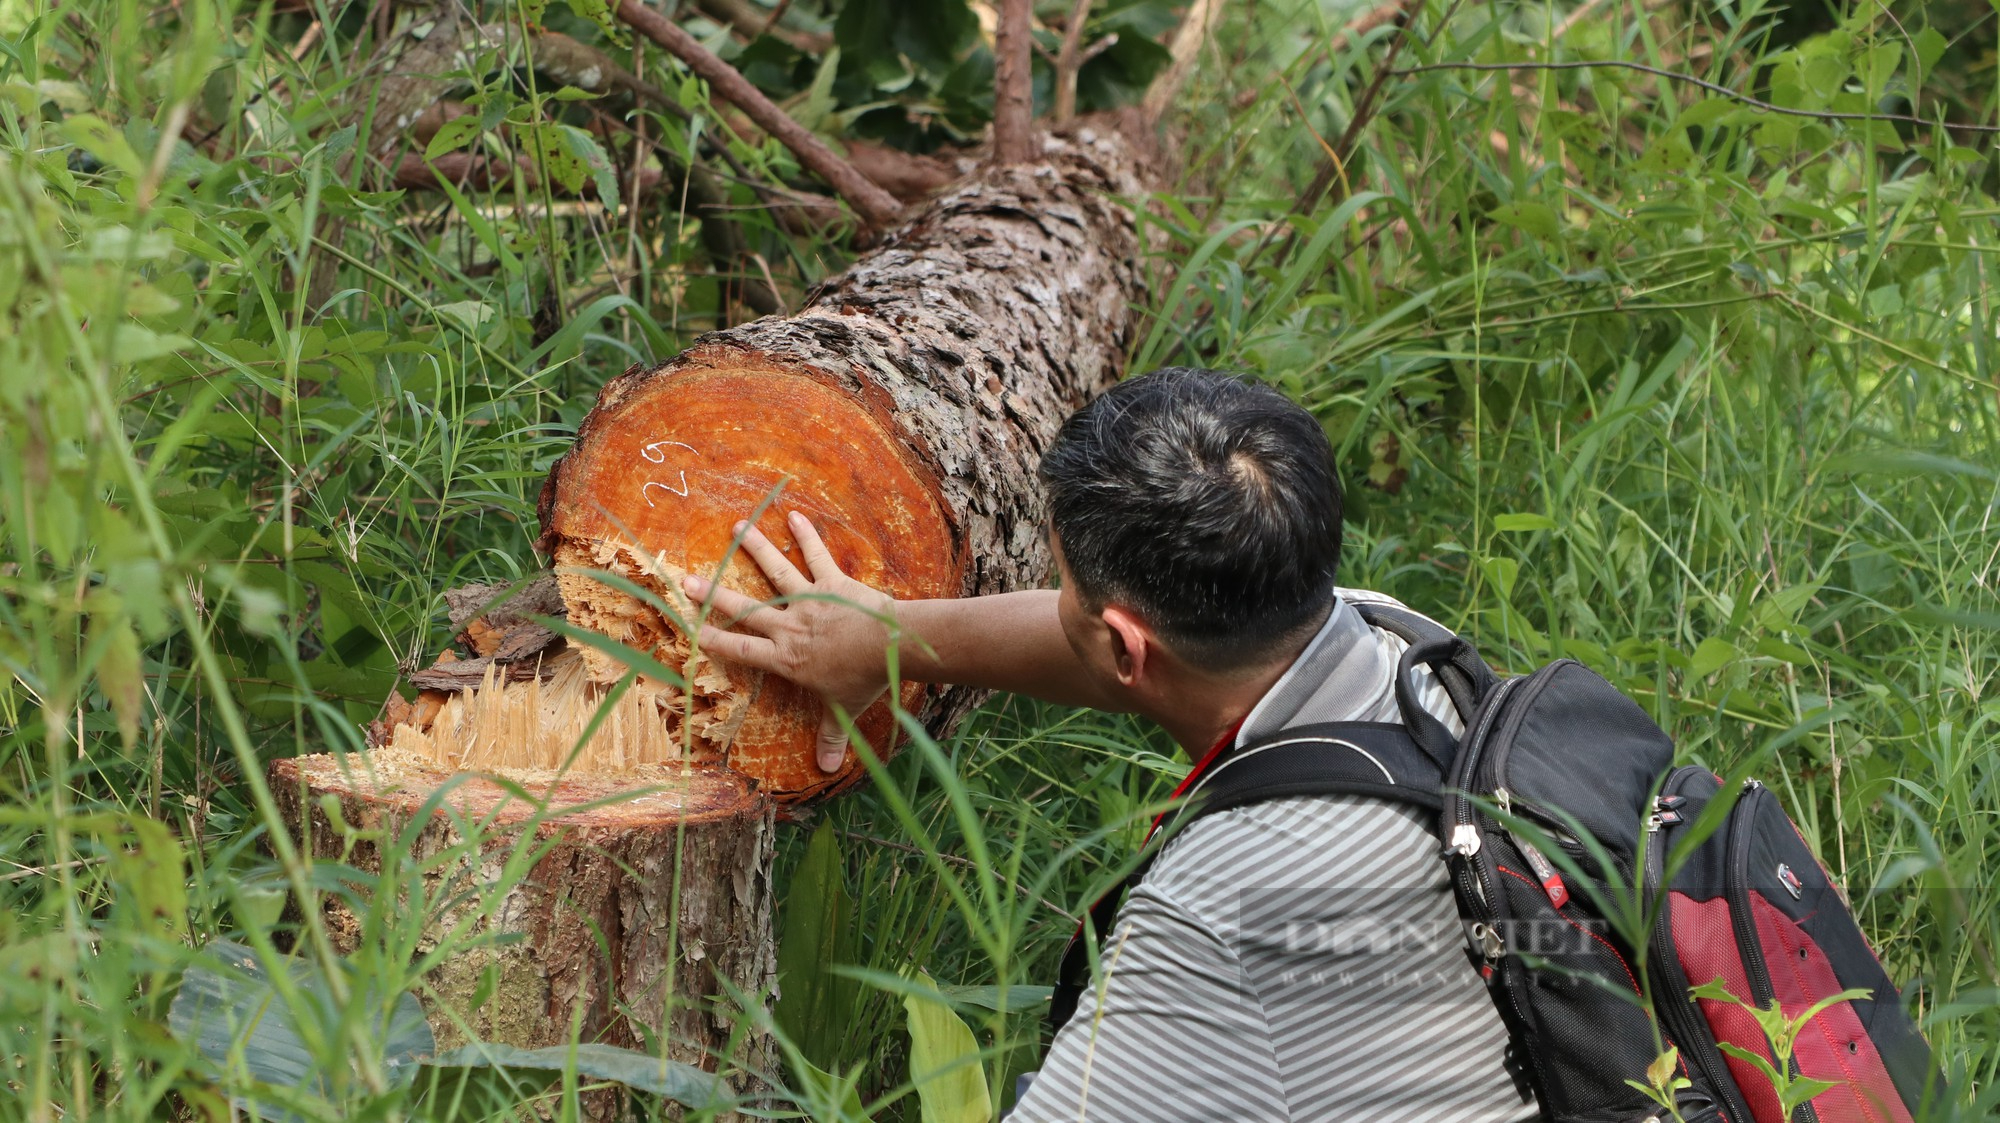 Phá rừng thông ở Lâm Đồng: Hàng trăm cây thông 3 lá nằm la liệt, huyện hỏa tốc chỉ đạo xử lý - Ảnh 5.